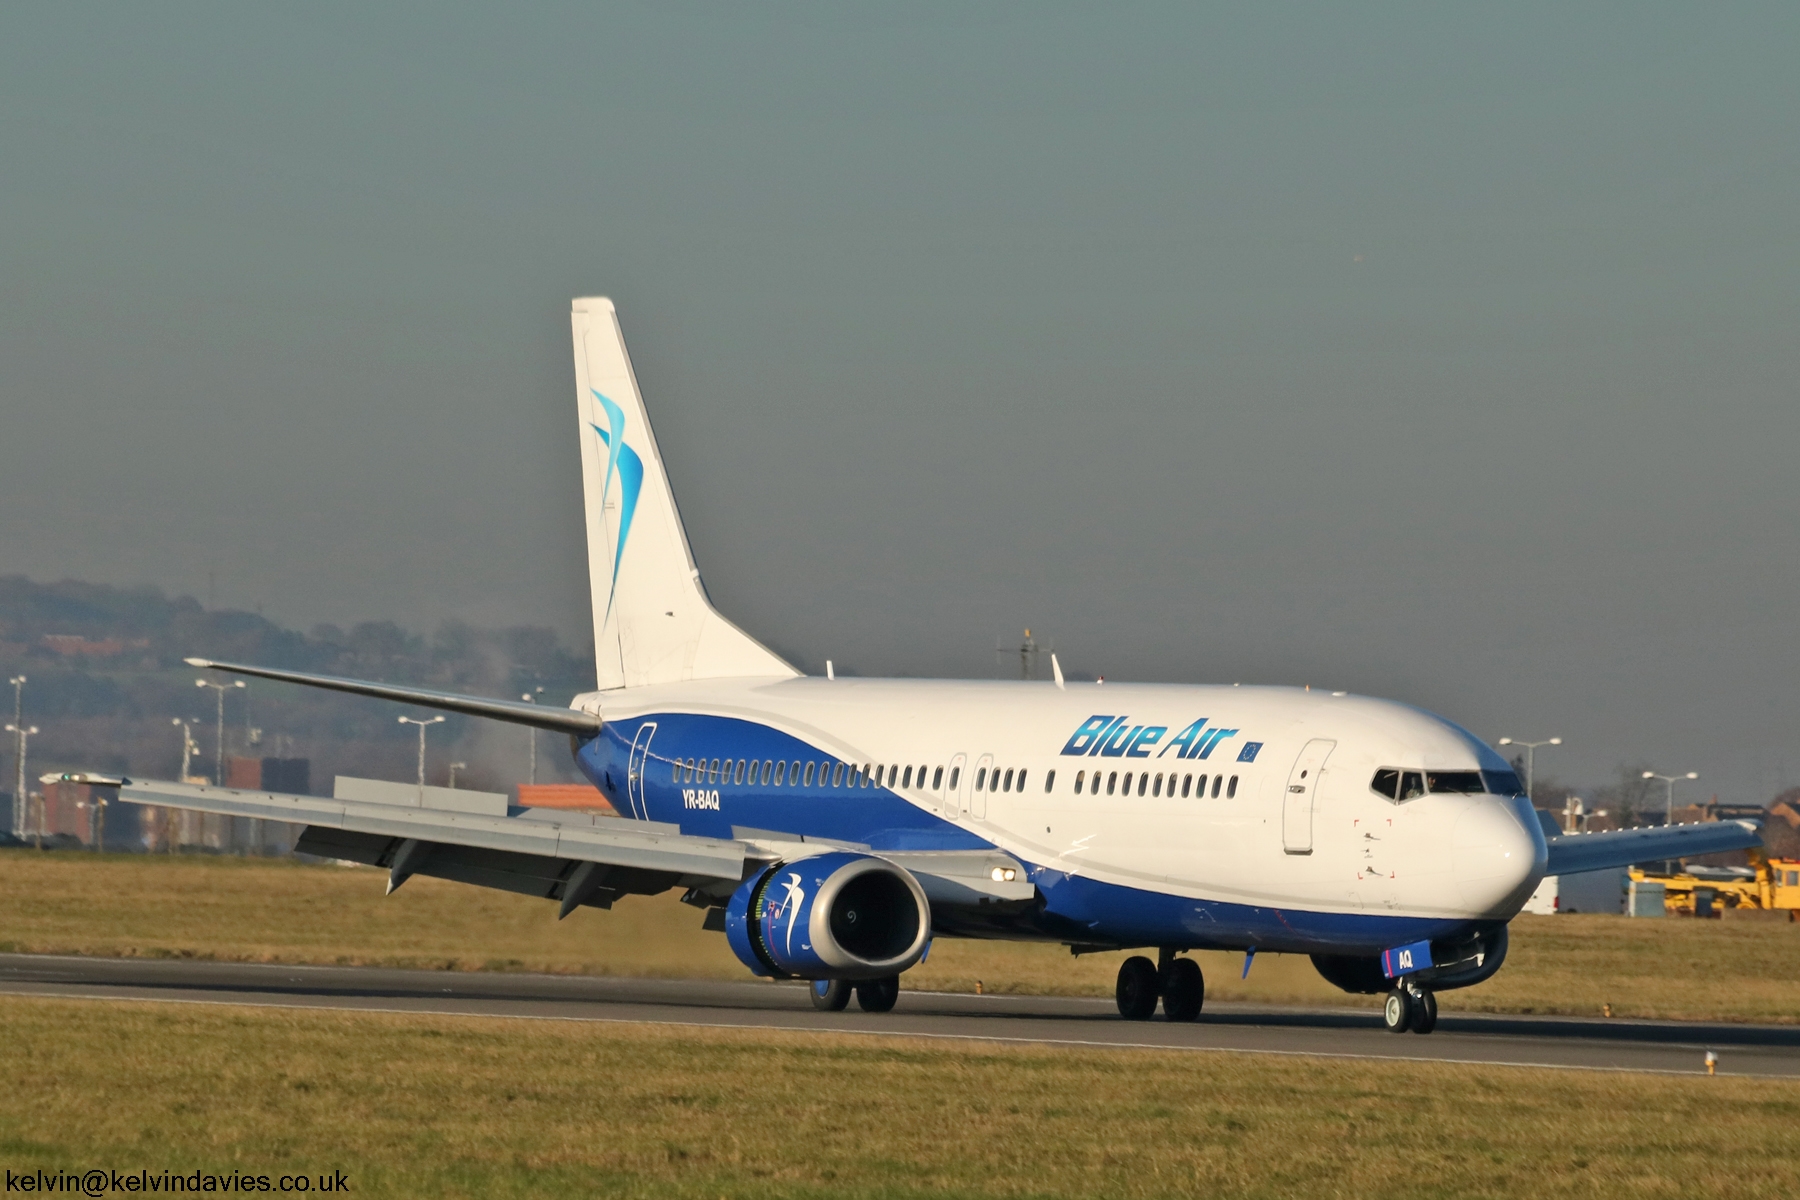 Blue Air 737-4D7 YR-BAQ